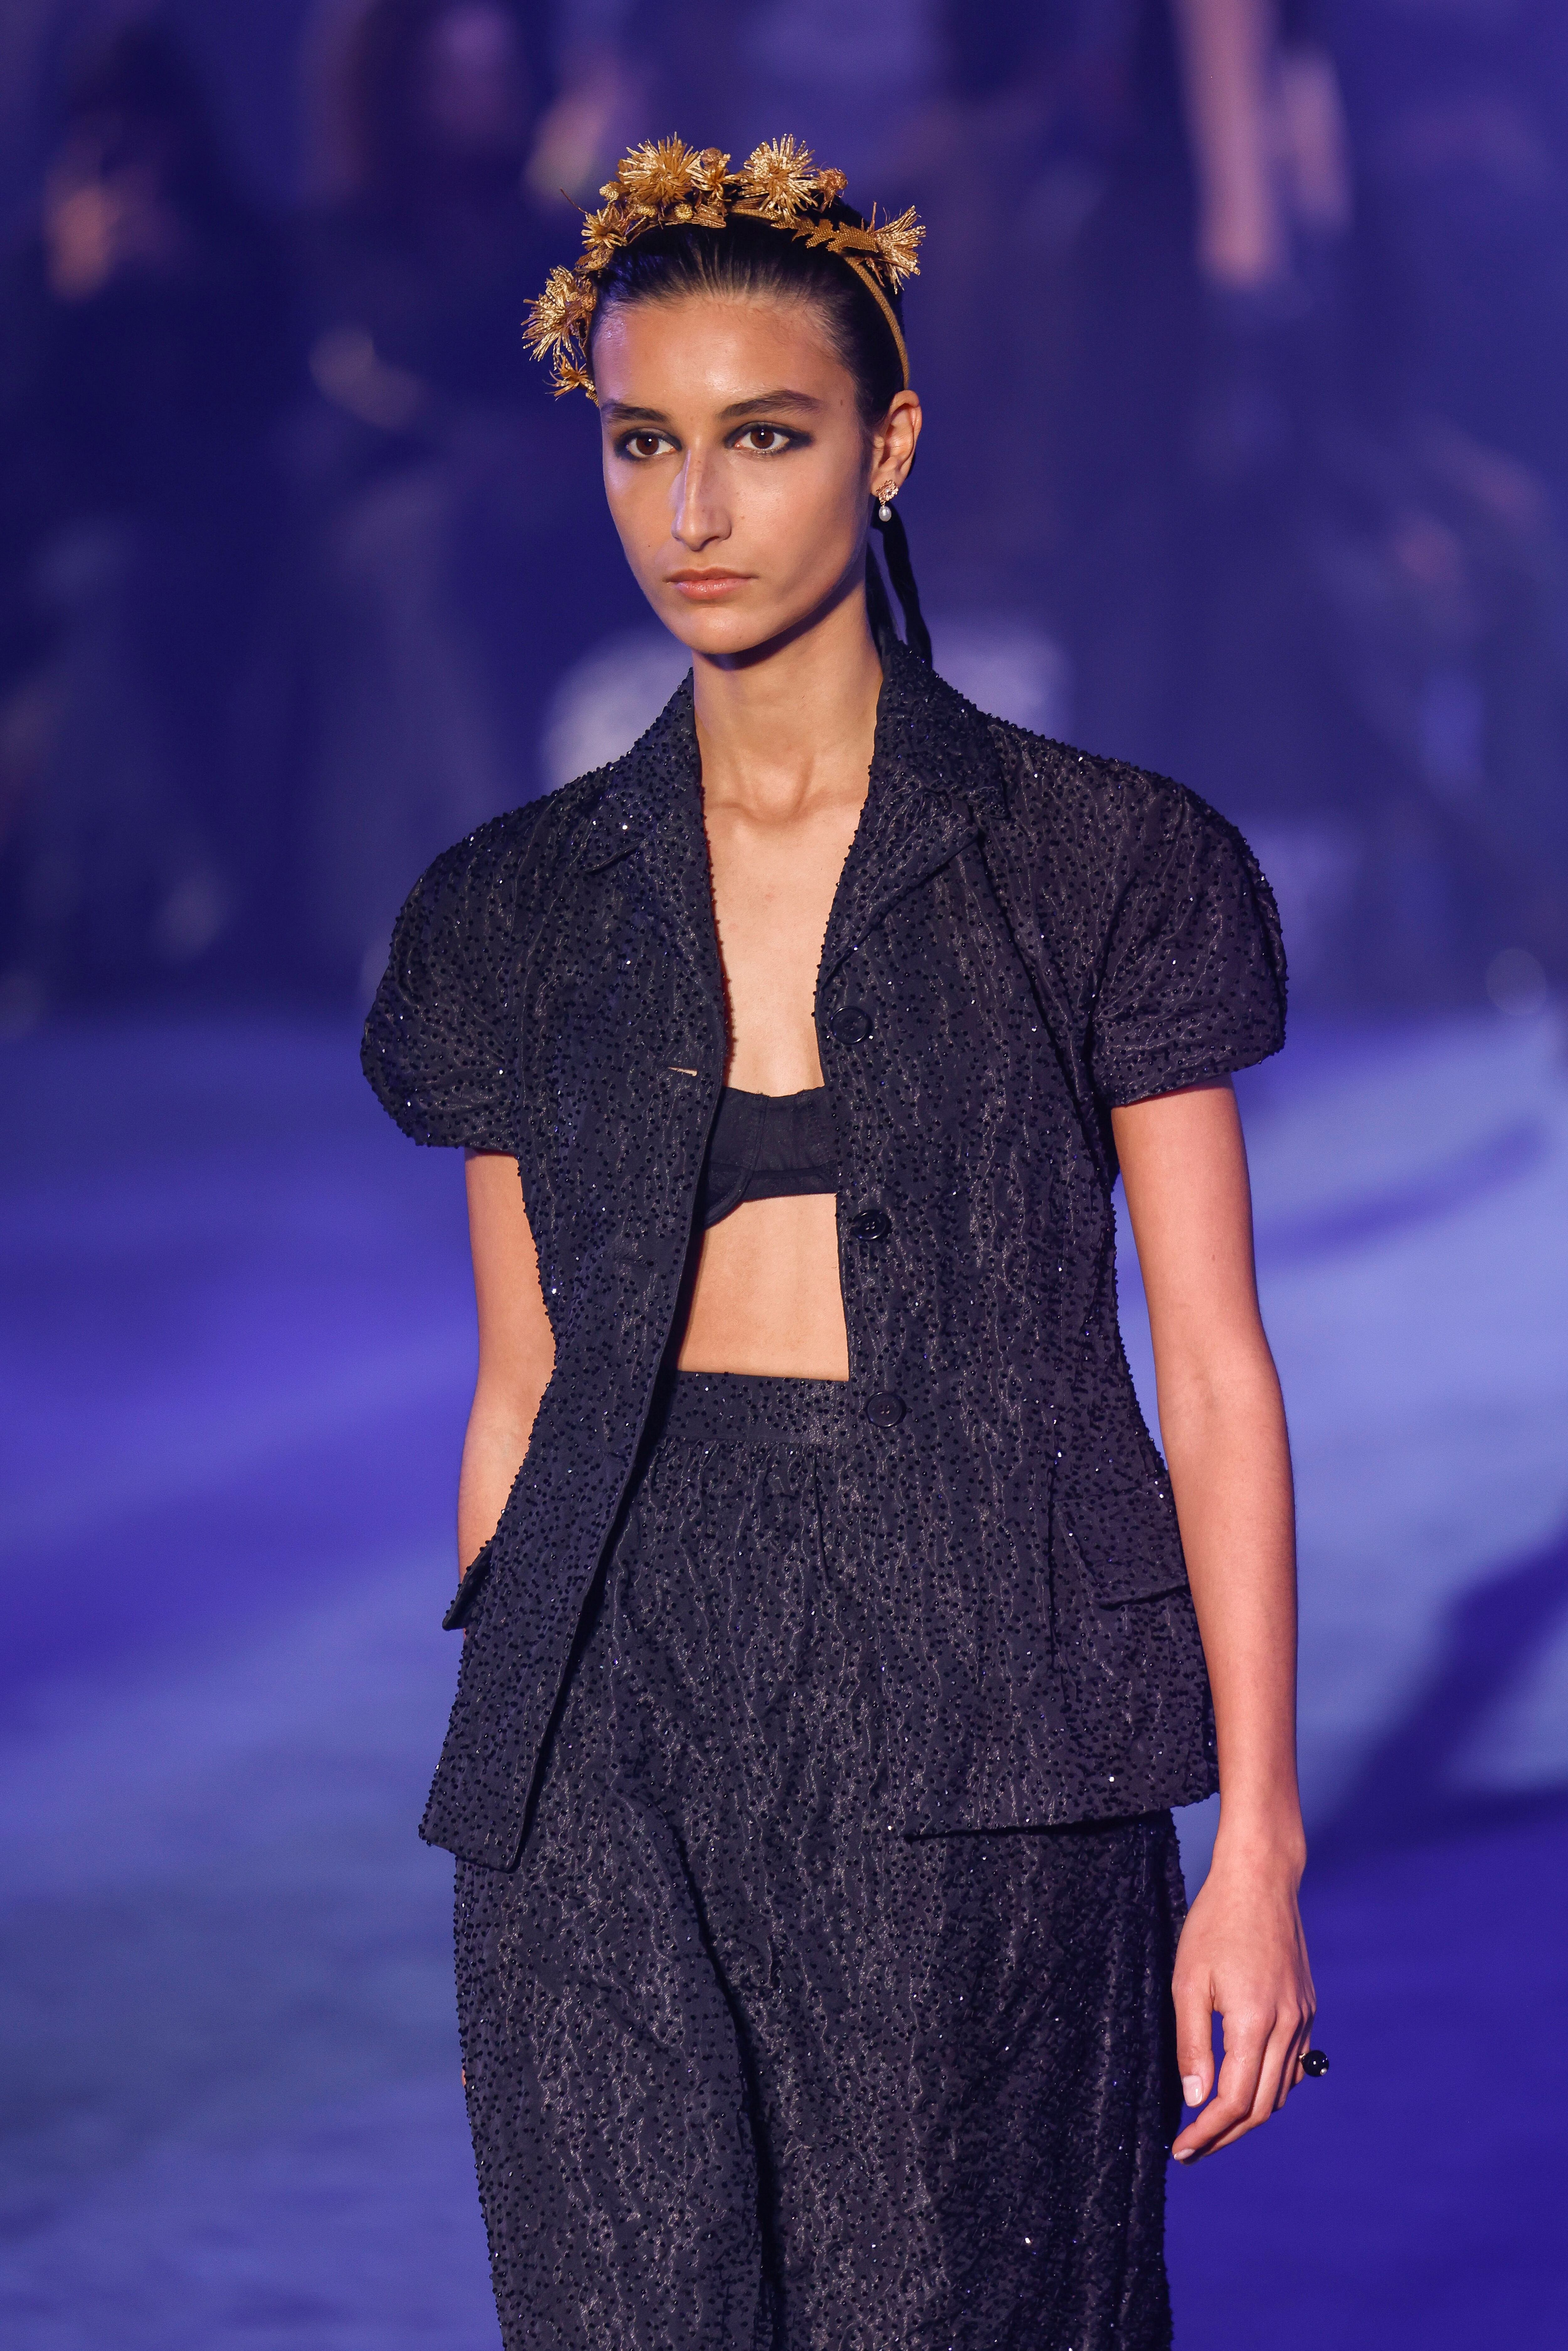 Paris Fashion Week Spring 2021 HIGHLIGHTS: From GOT Star Maisie